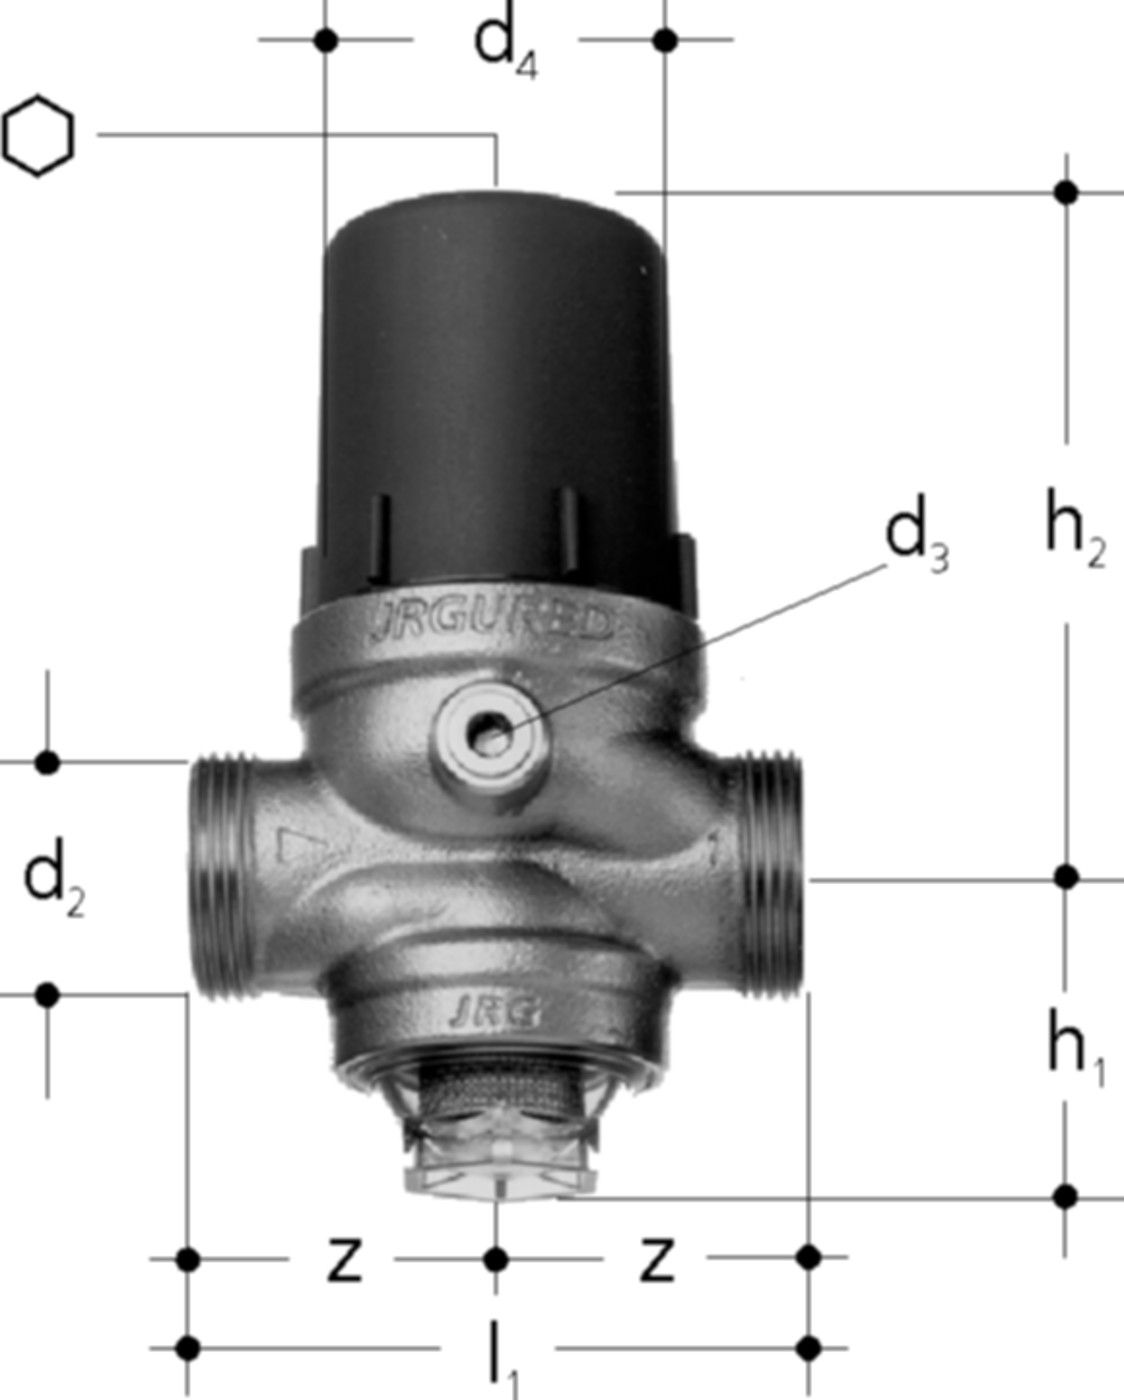 Druckred-Ventil DN20 1303.020 3/4" / G 1" , ohne Verschraubung - JRG Armaturen